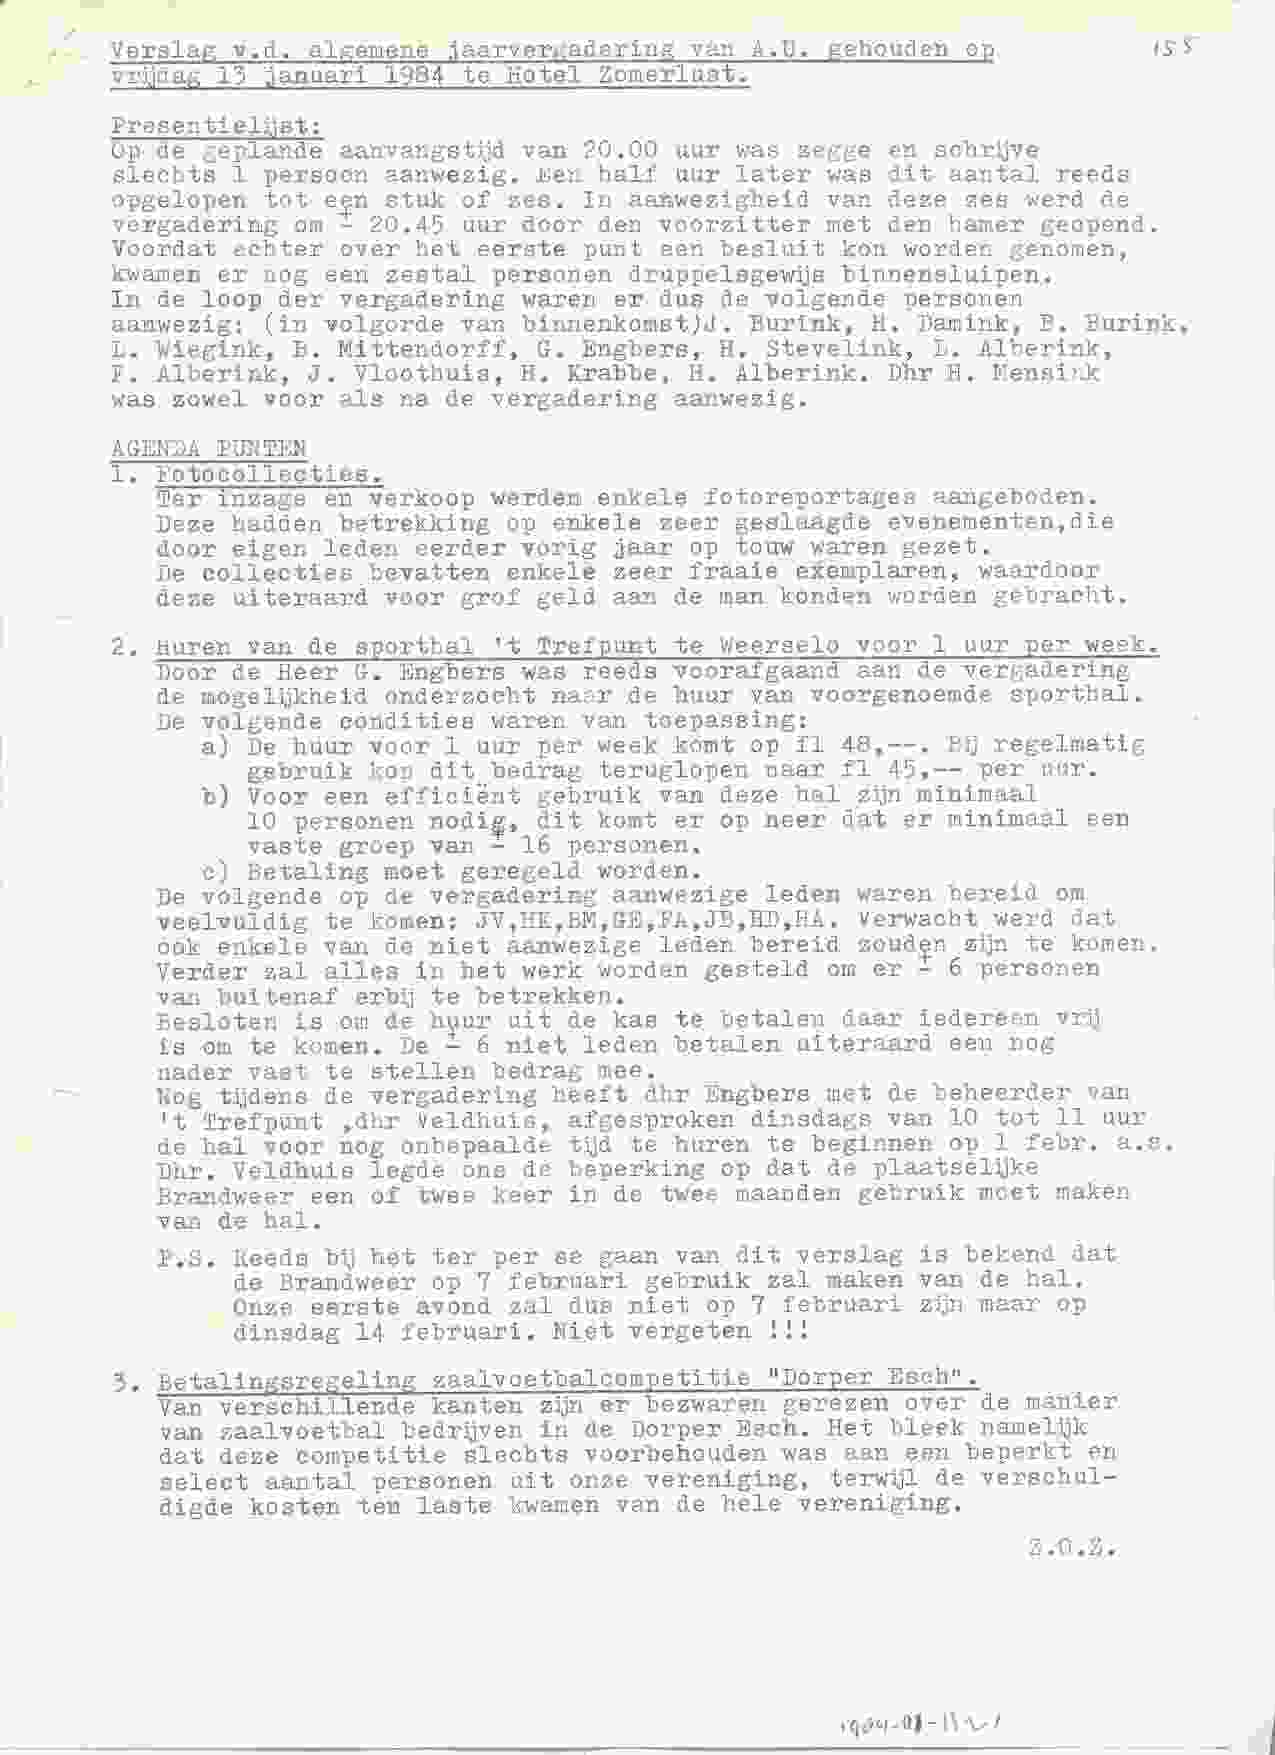 Notulen van de vergadering op 1984-01-13